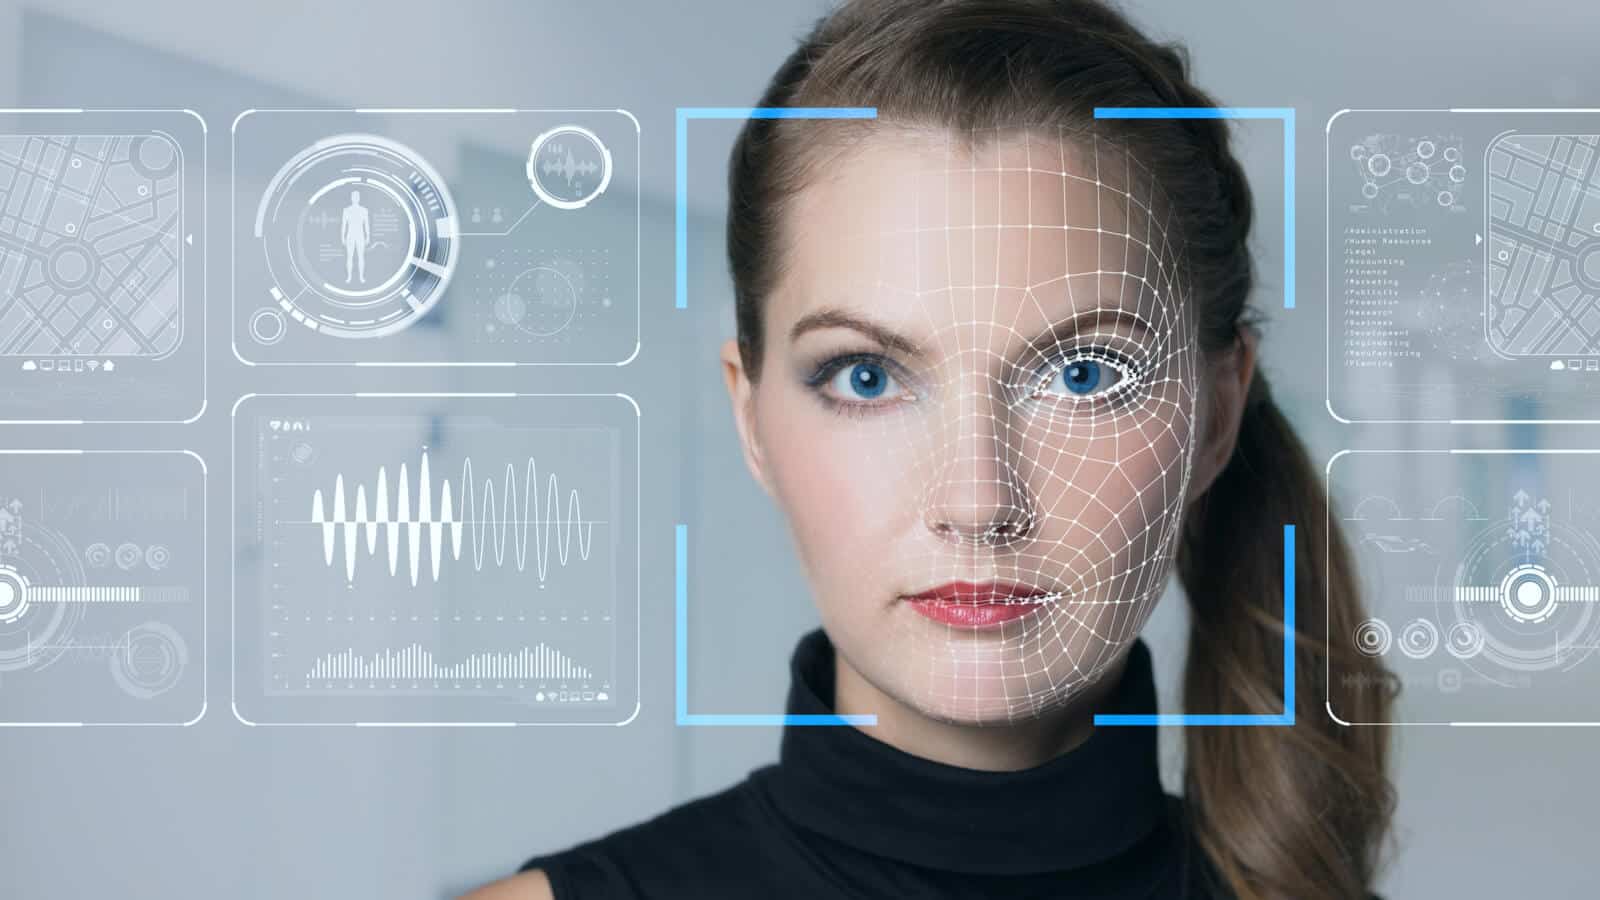 Das Gesicht einer Frau wird analysiert, um damit ein deepfake Video zu erstellen.